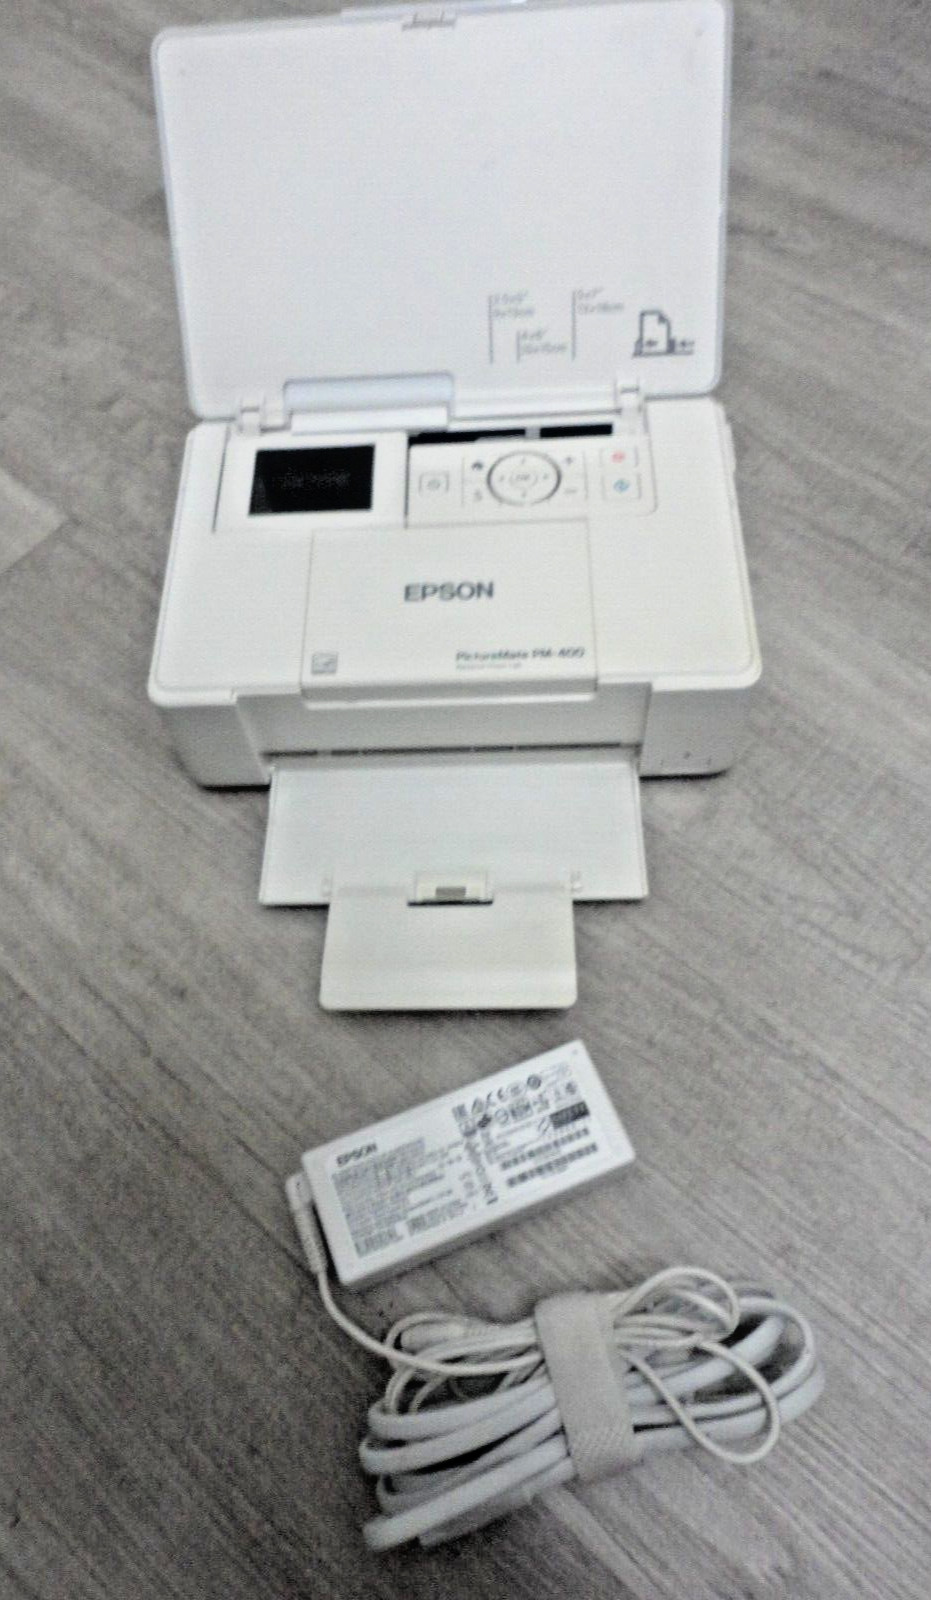 Epson PictureMate PM-400 Photo Printer